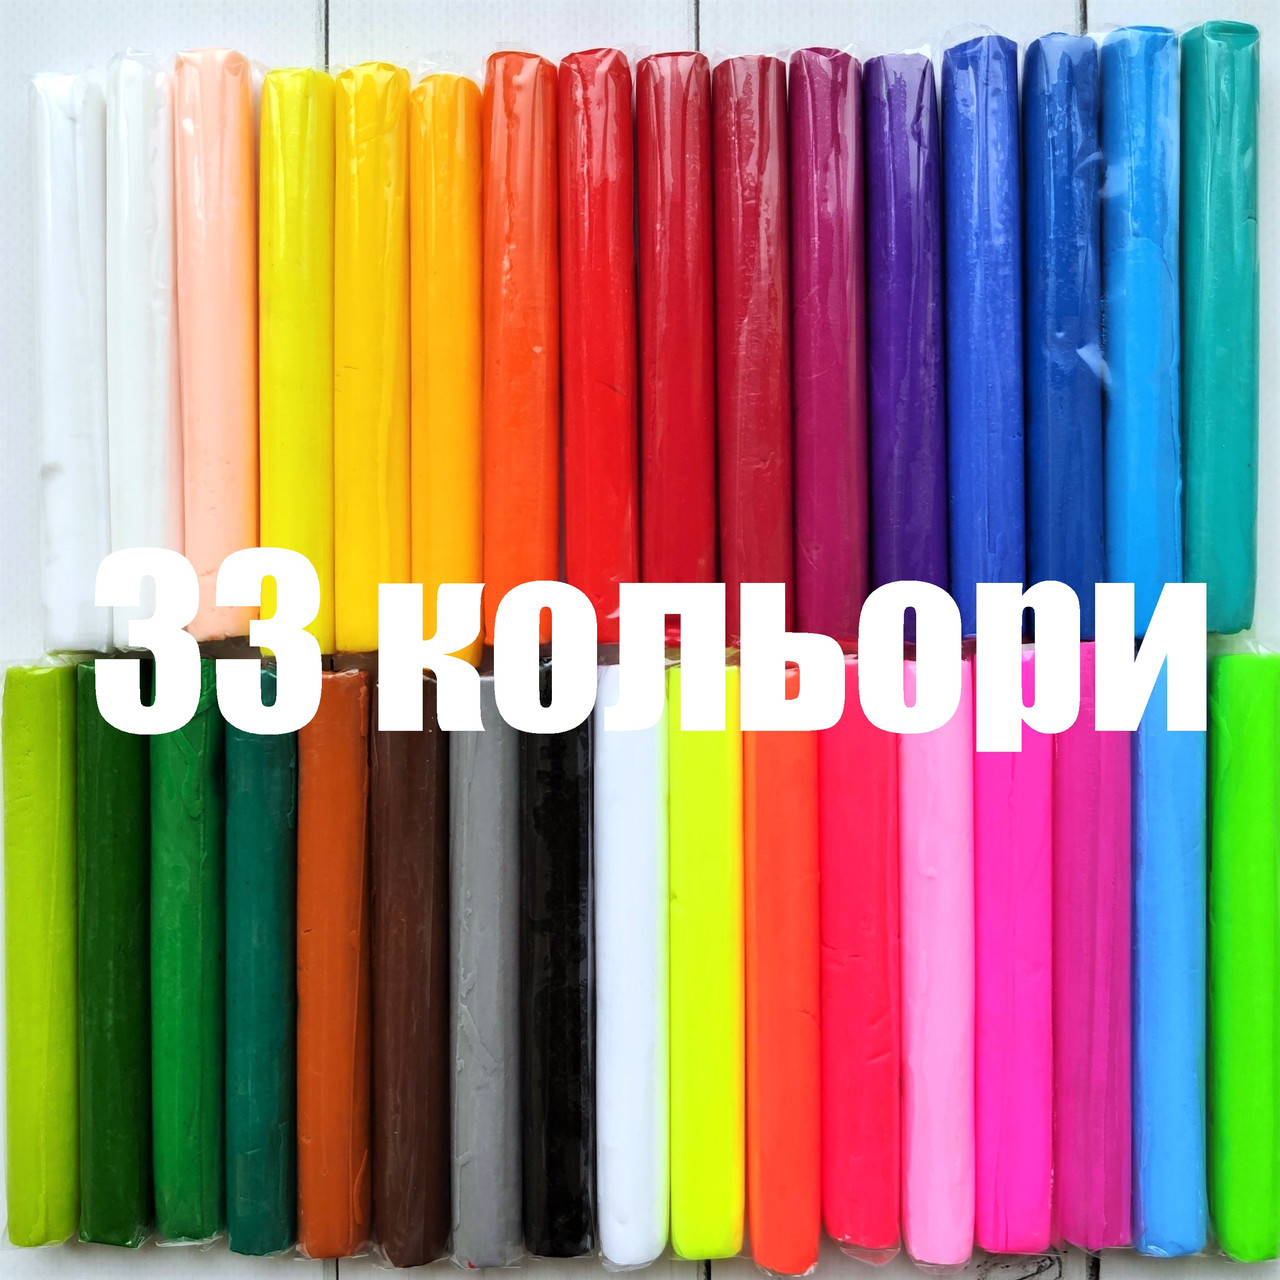 Полімерна глина термопластилін Пластішка Набір 33 кольори Пластика Набір 33 кольори